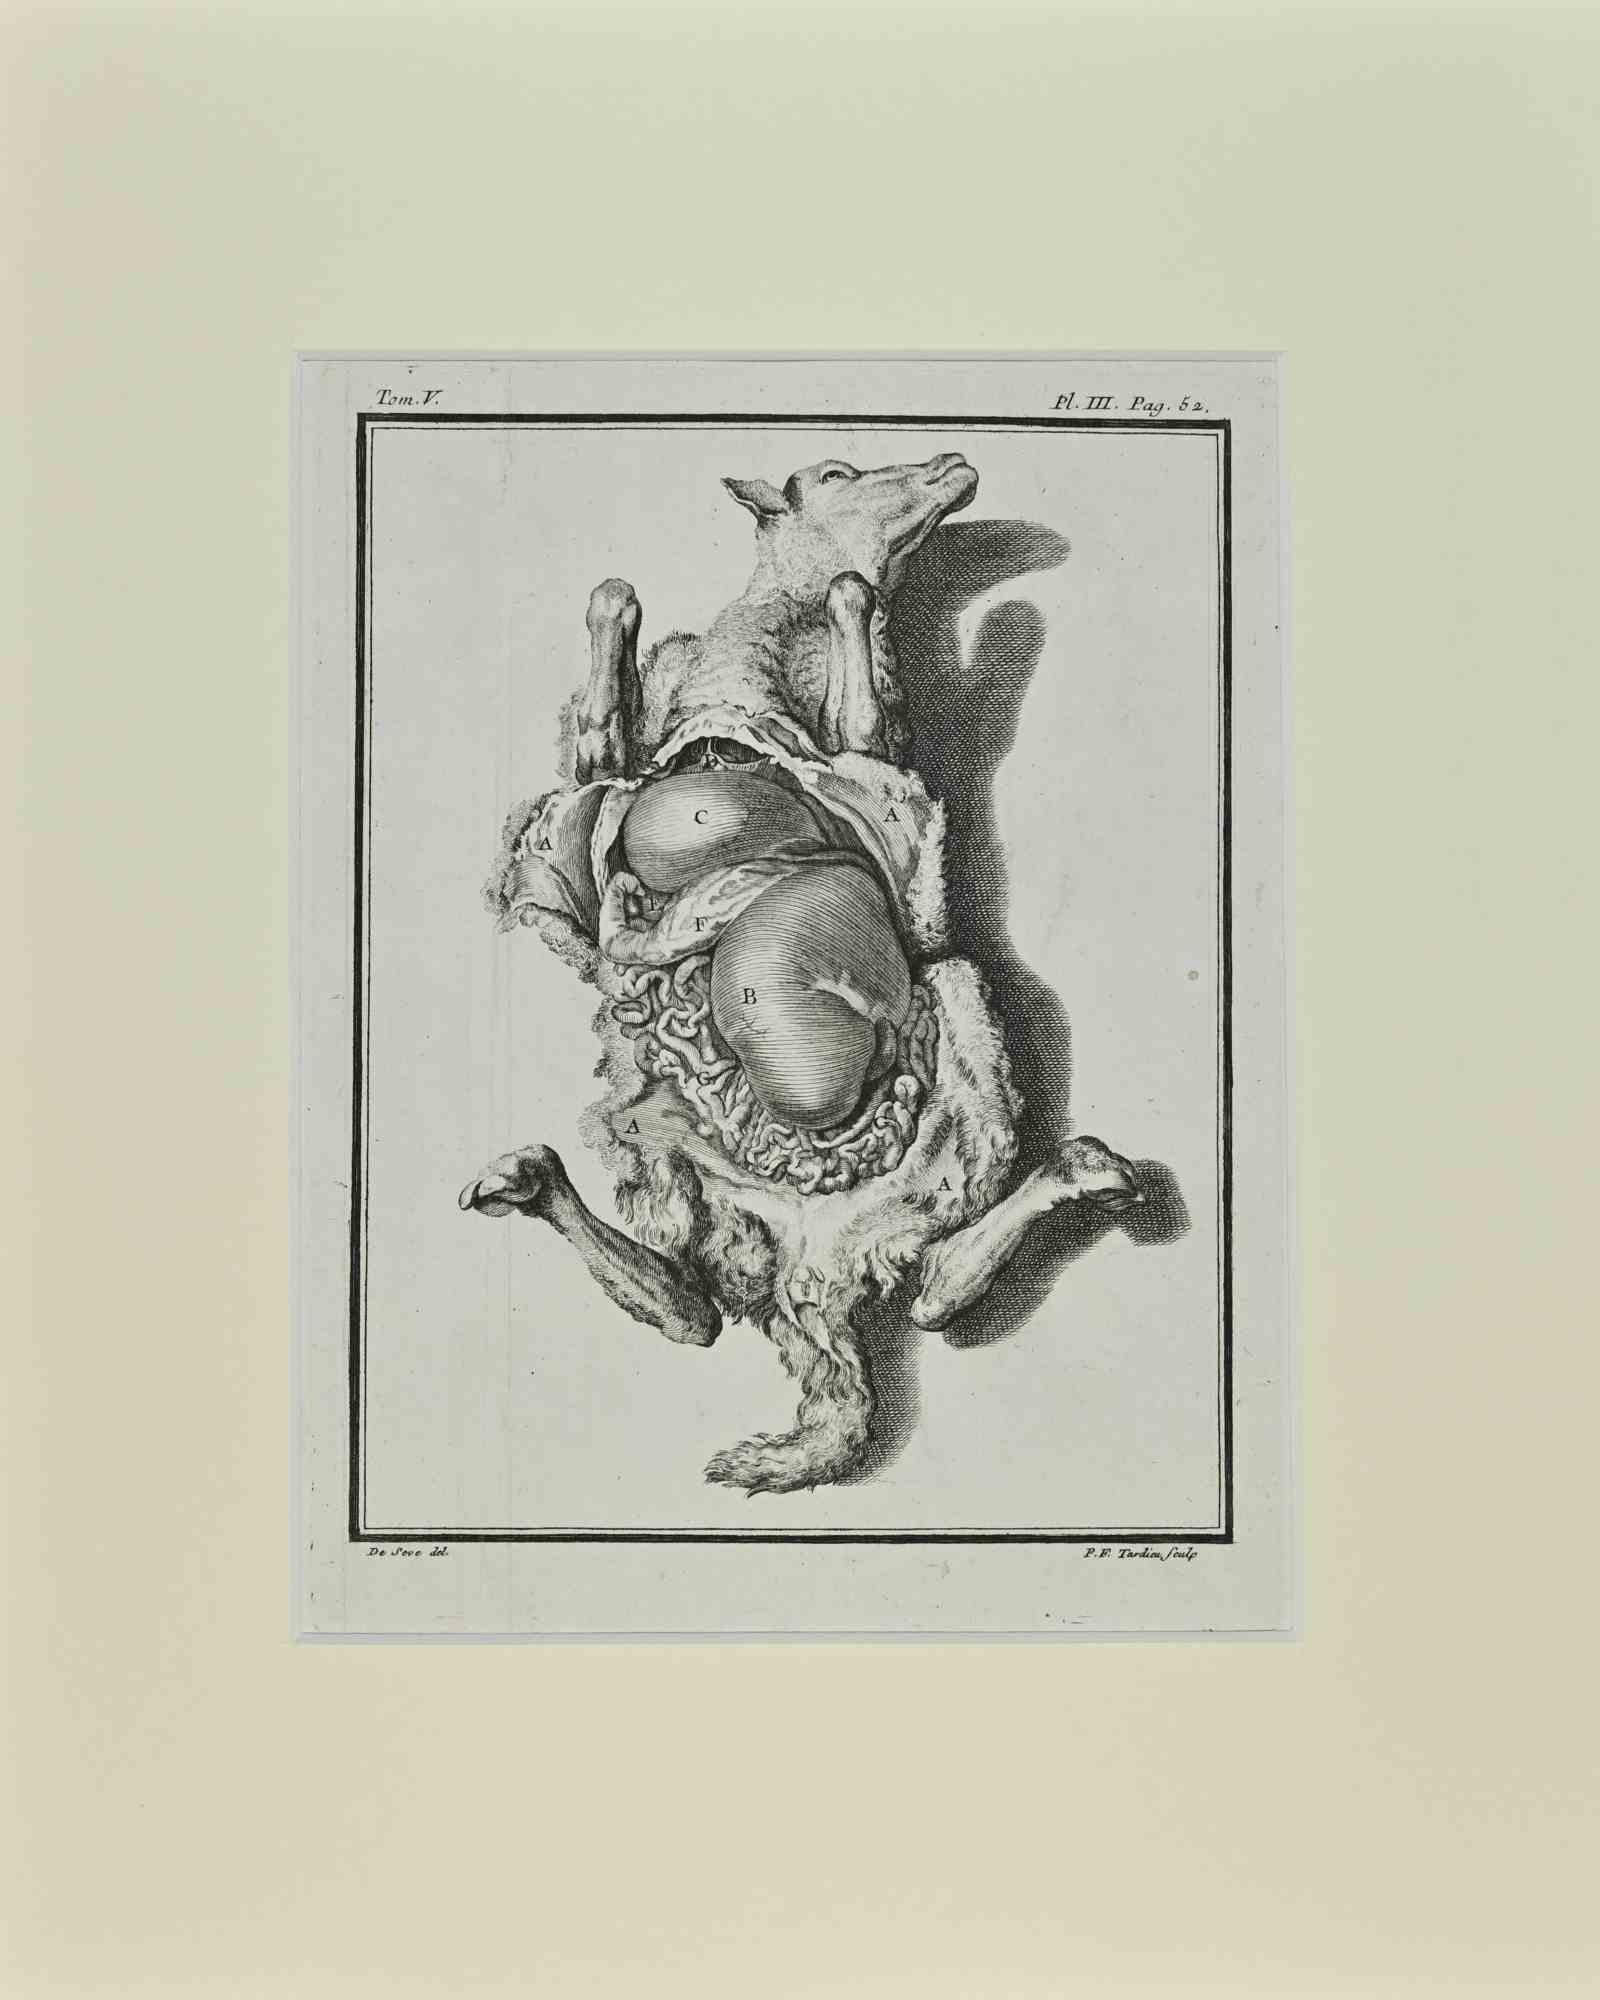 Jacques de Seve Animal Print - The Dissected Veal - Etching by Jacques De Sève - 1771